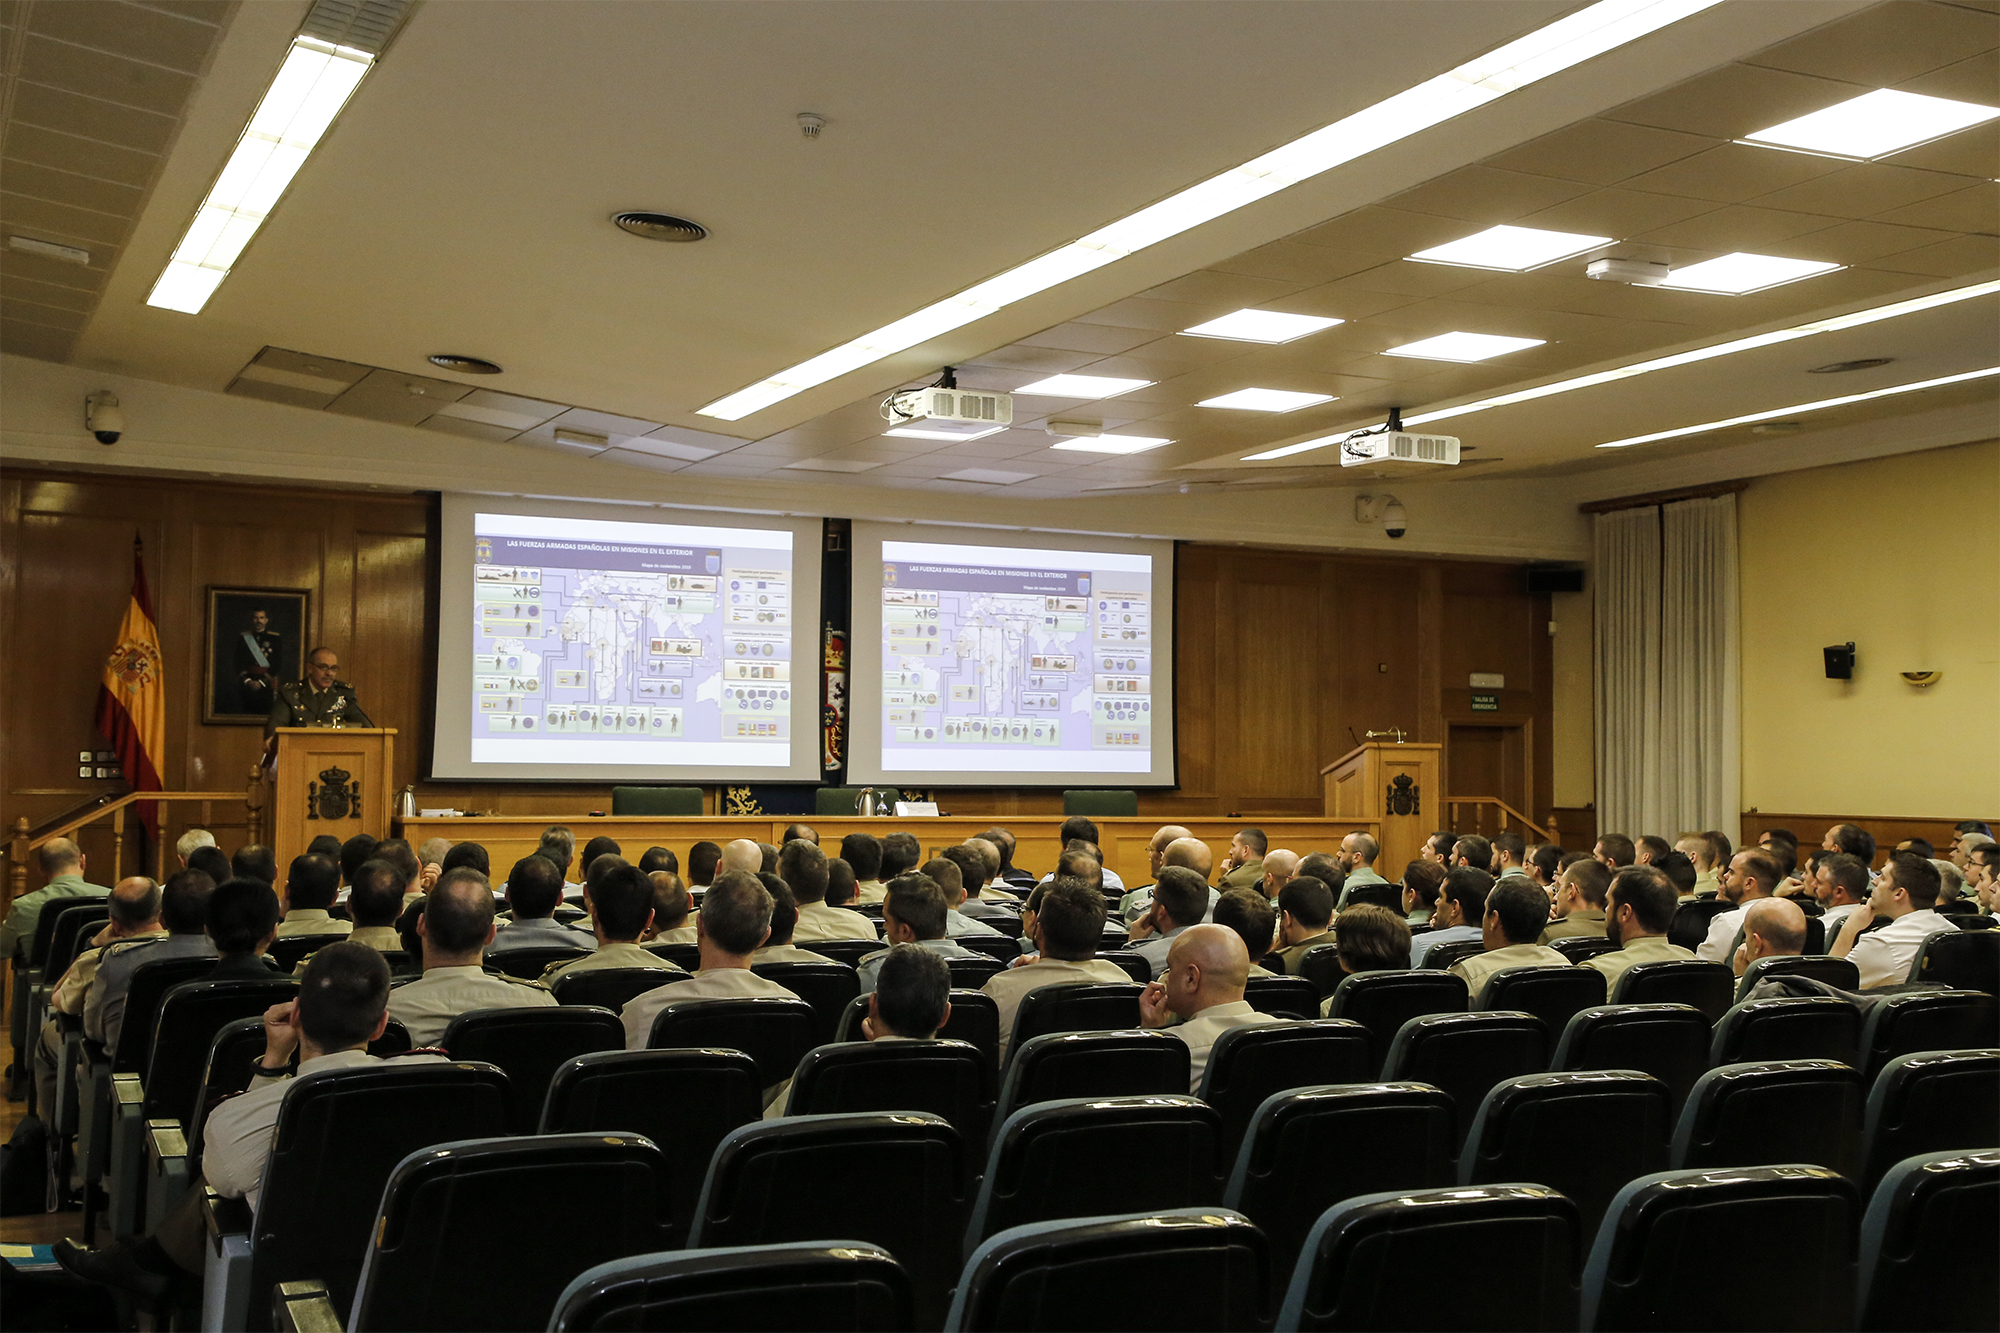 El JEMAD imparte una conferencia a los alumnos del curso de actualización para el ascenso a comandante